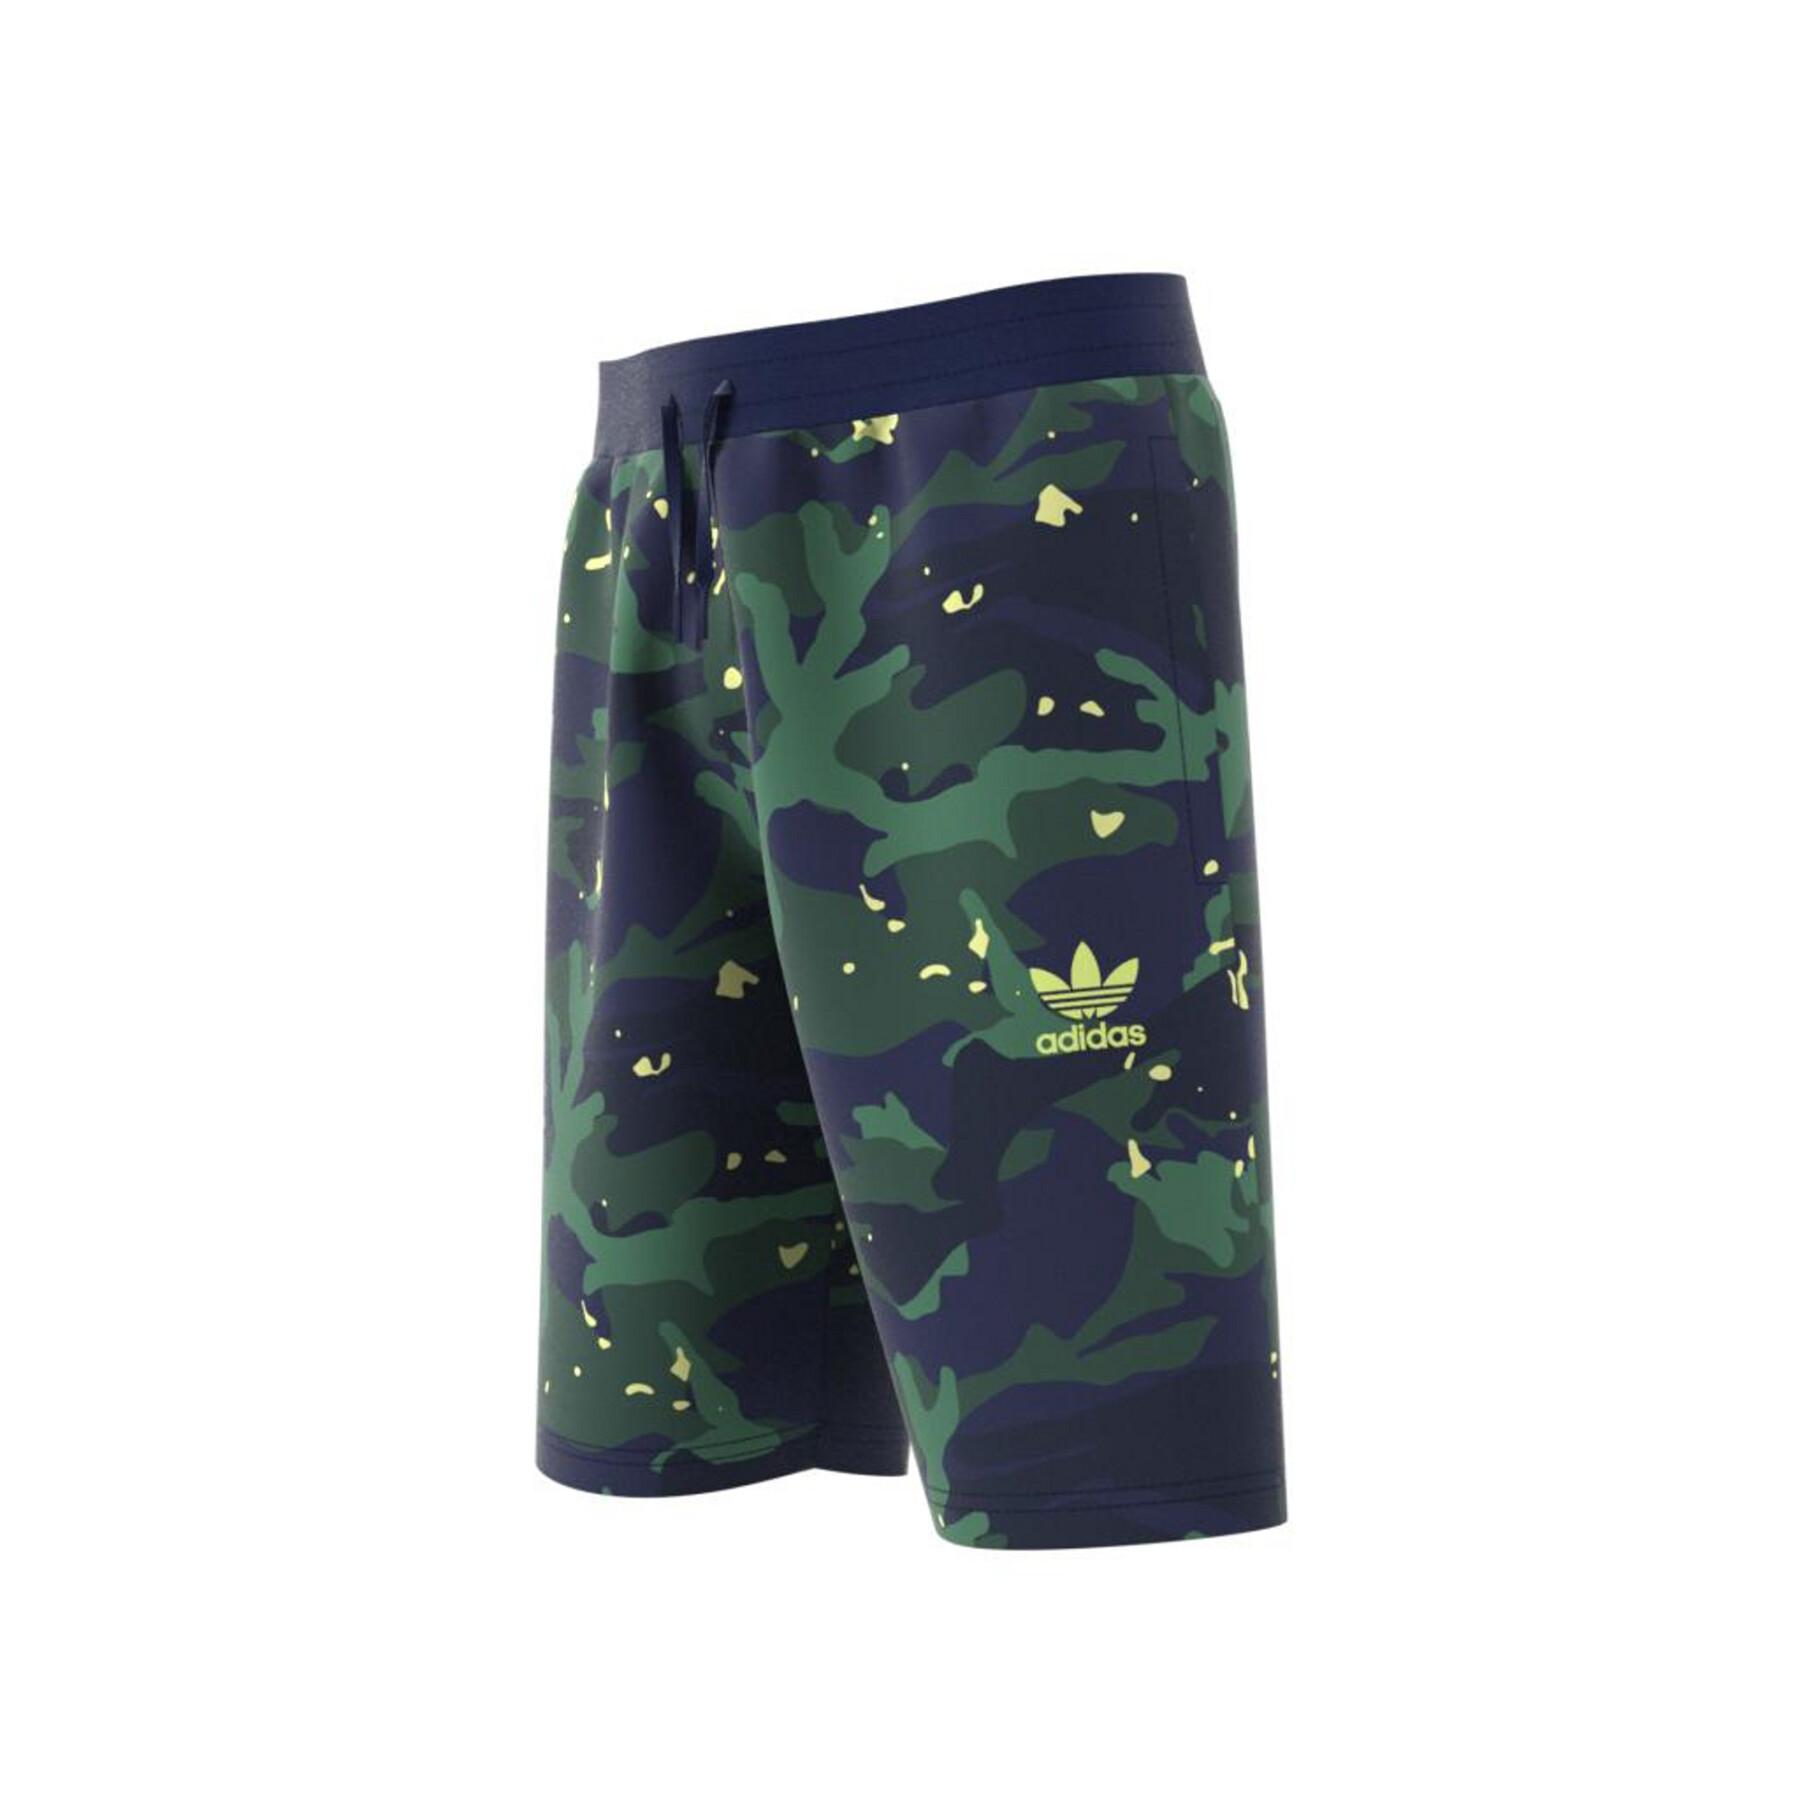 Pantalones cortos para niños adidas Originals Allover Camo-Print